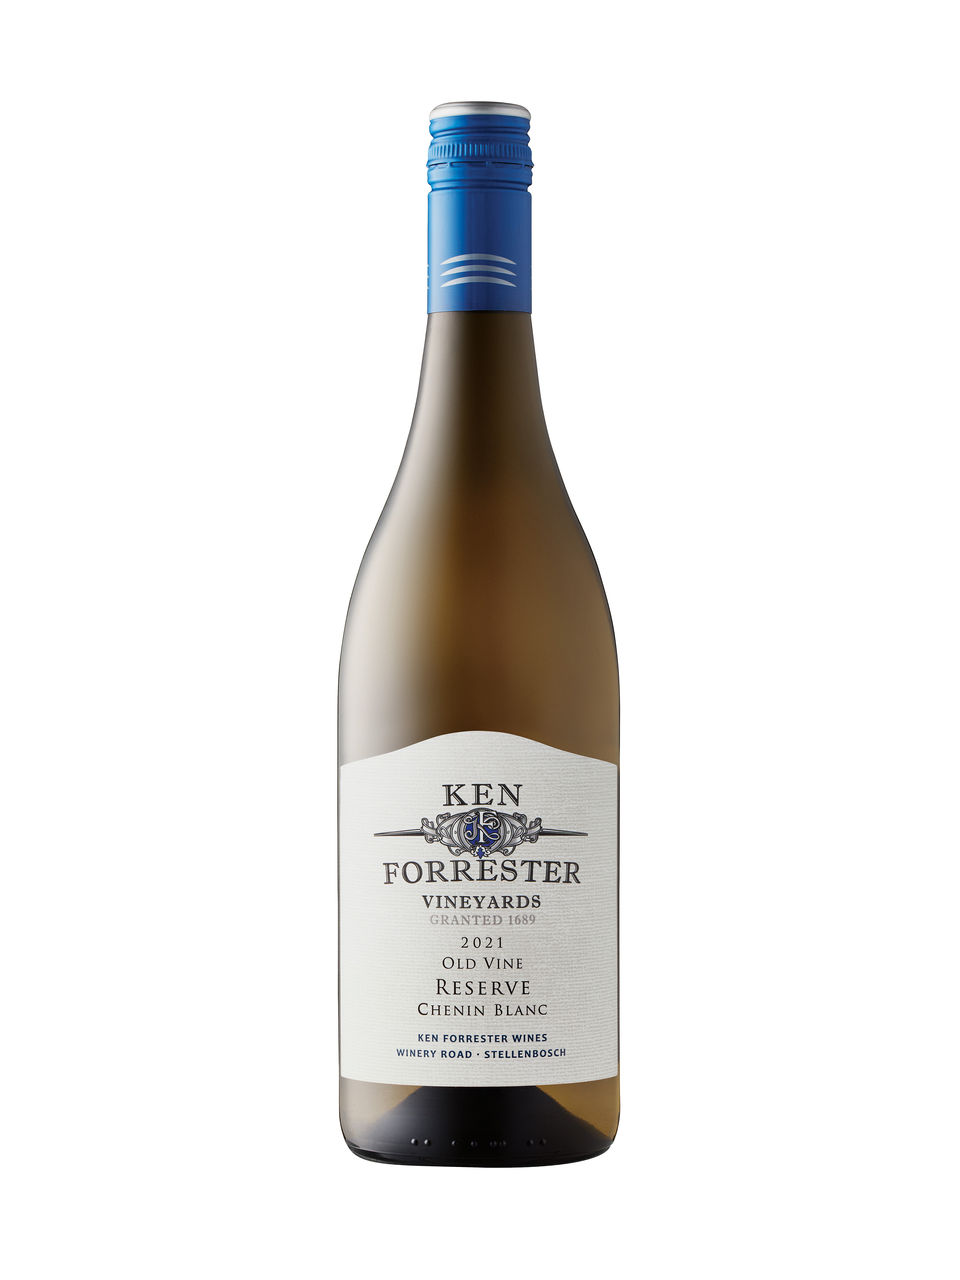 Ken Forrester Old Vine Reserve Chenin Blanc 2021 - View Image 1